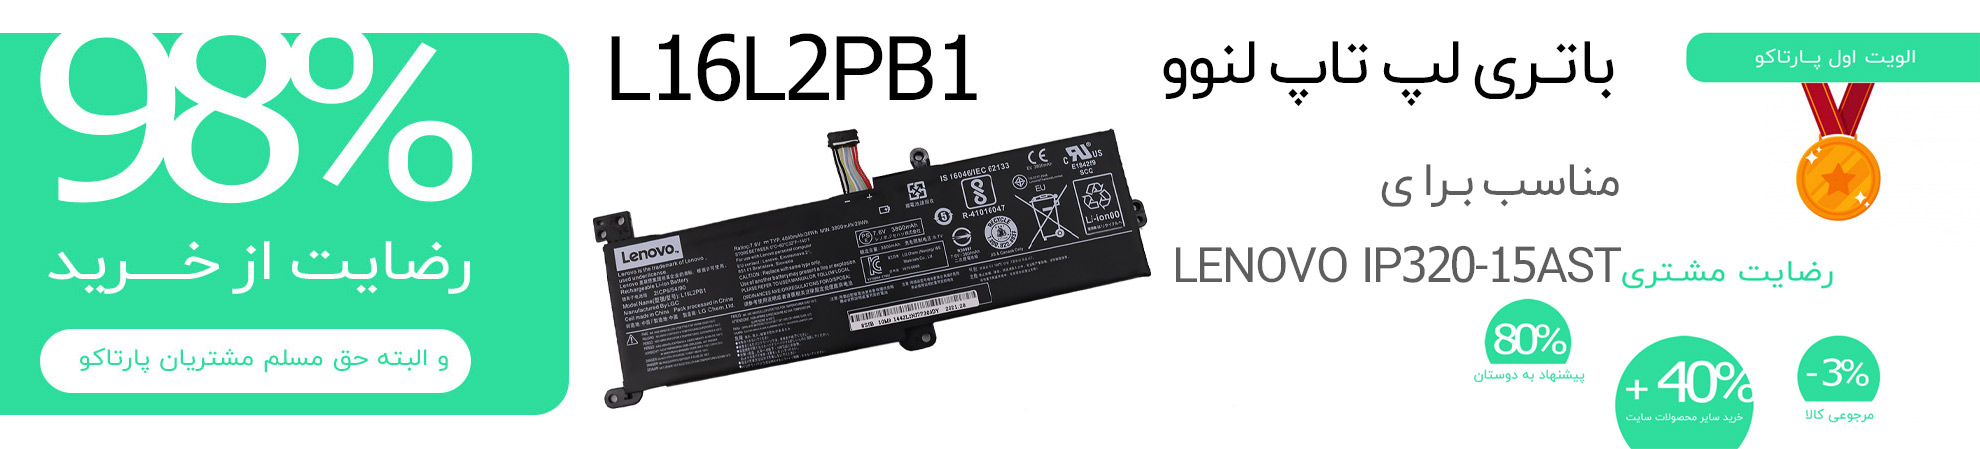 باتری اورجینال L16L2PB1